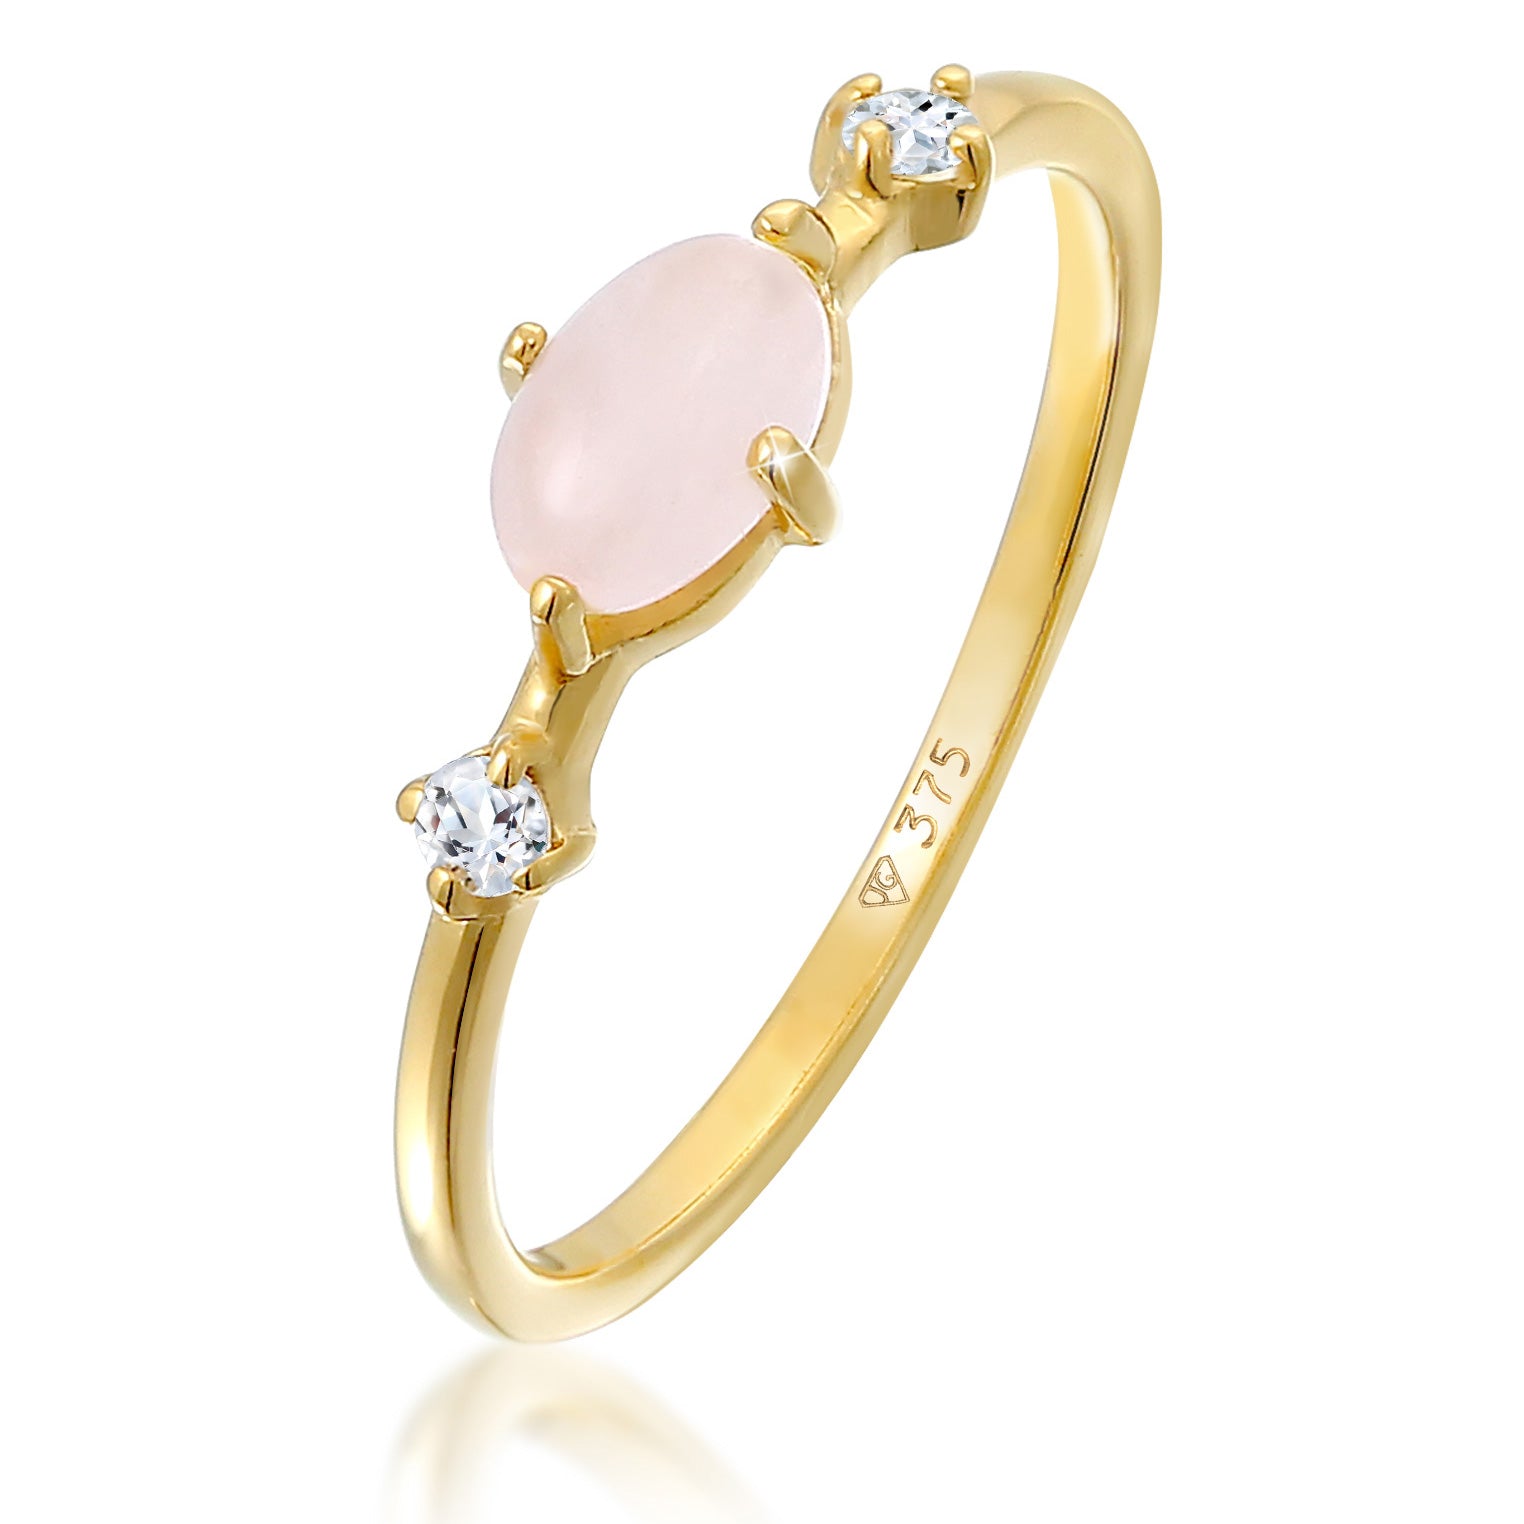 Gold - Elli PREMIUM | Ring | Quartz (rosa), Topas (weiß) | 375er Gelbgold